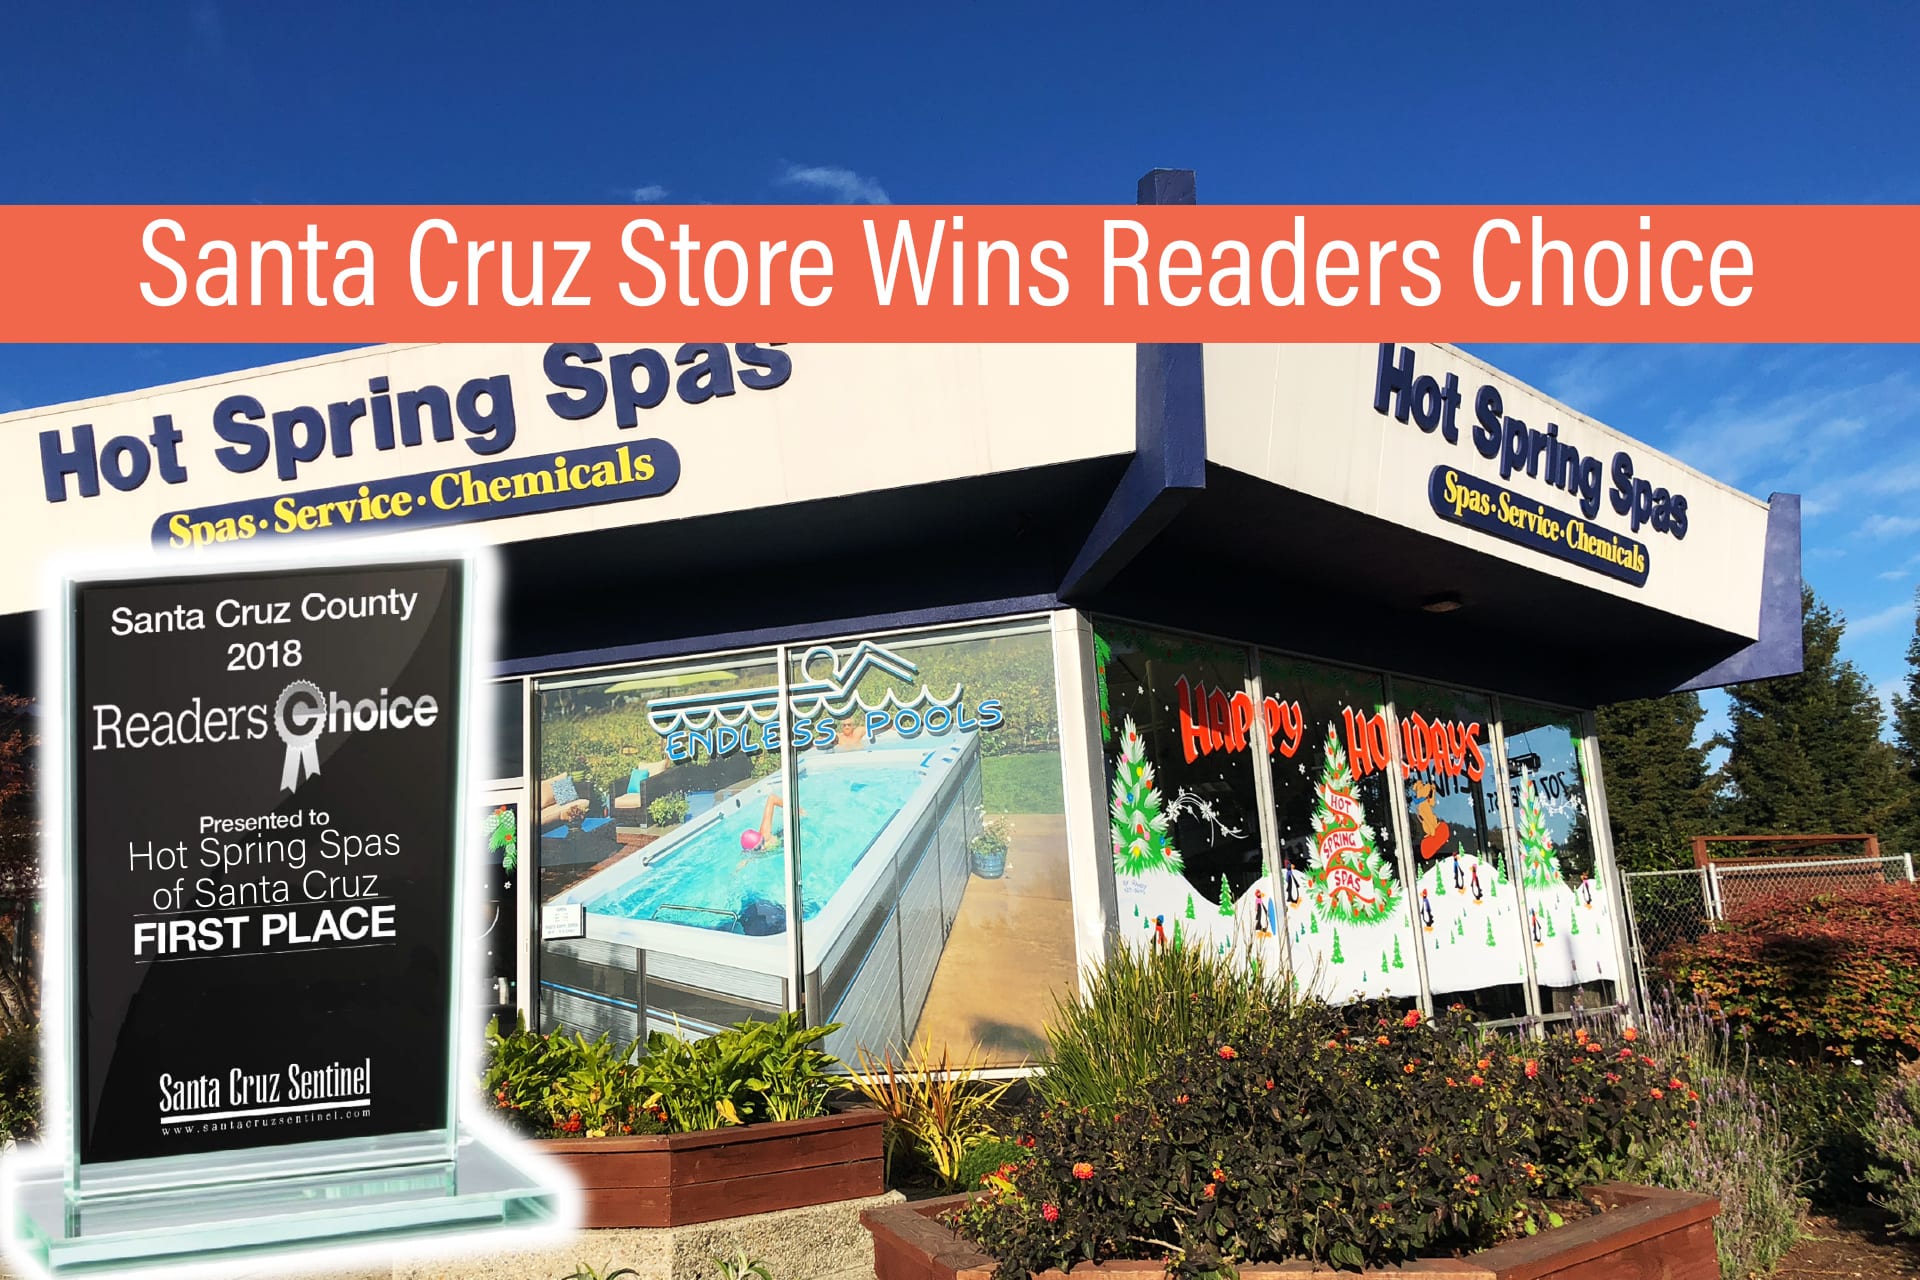 Santa Cruz Store Wins Readers Choice Award